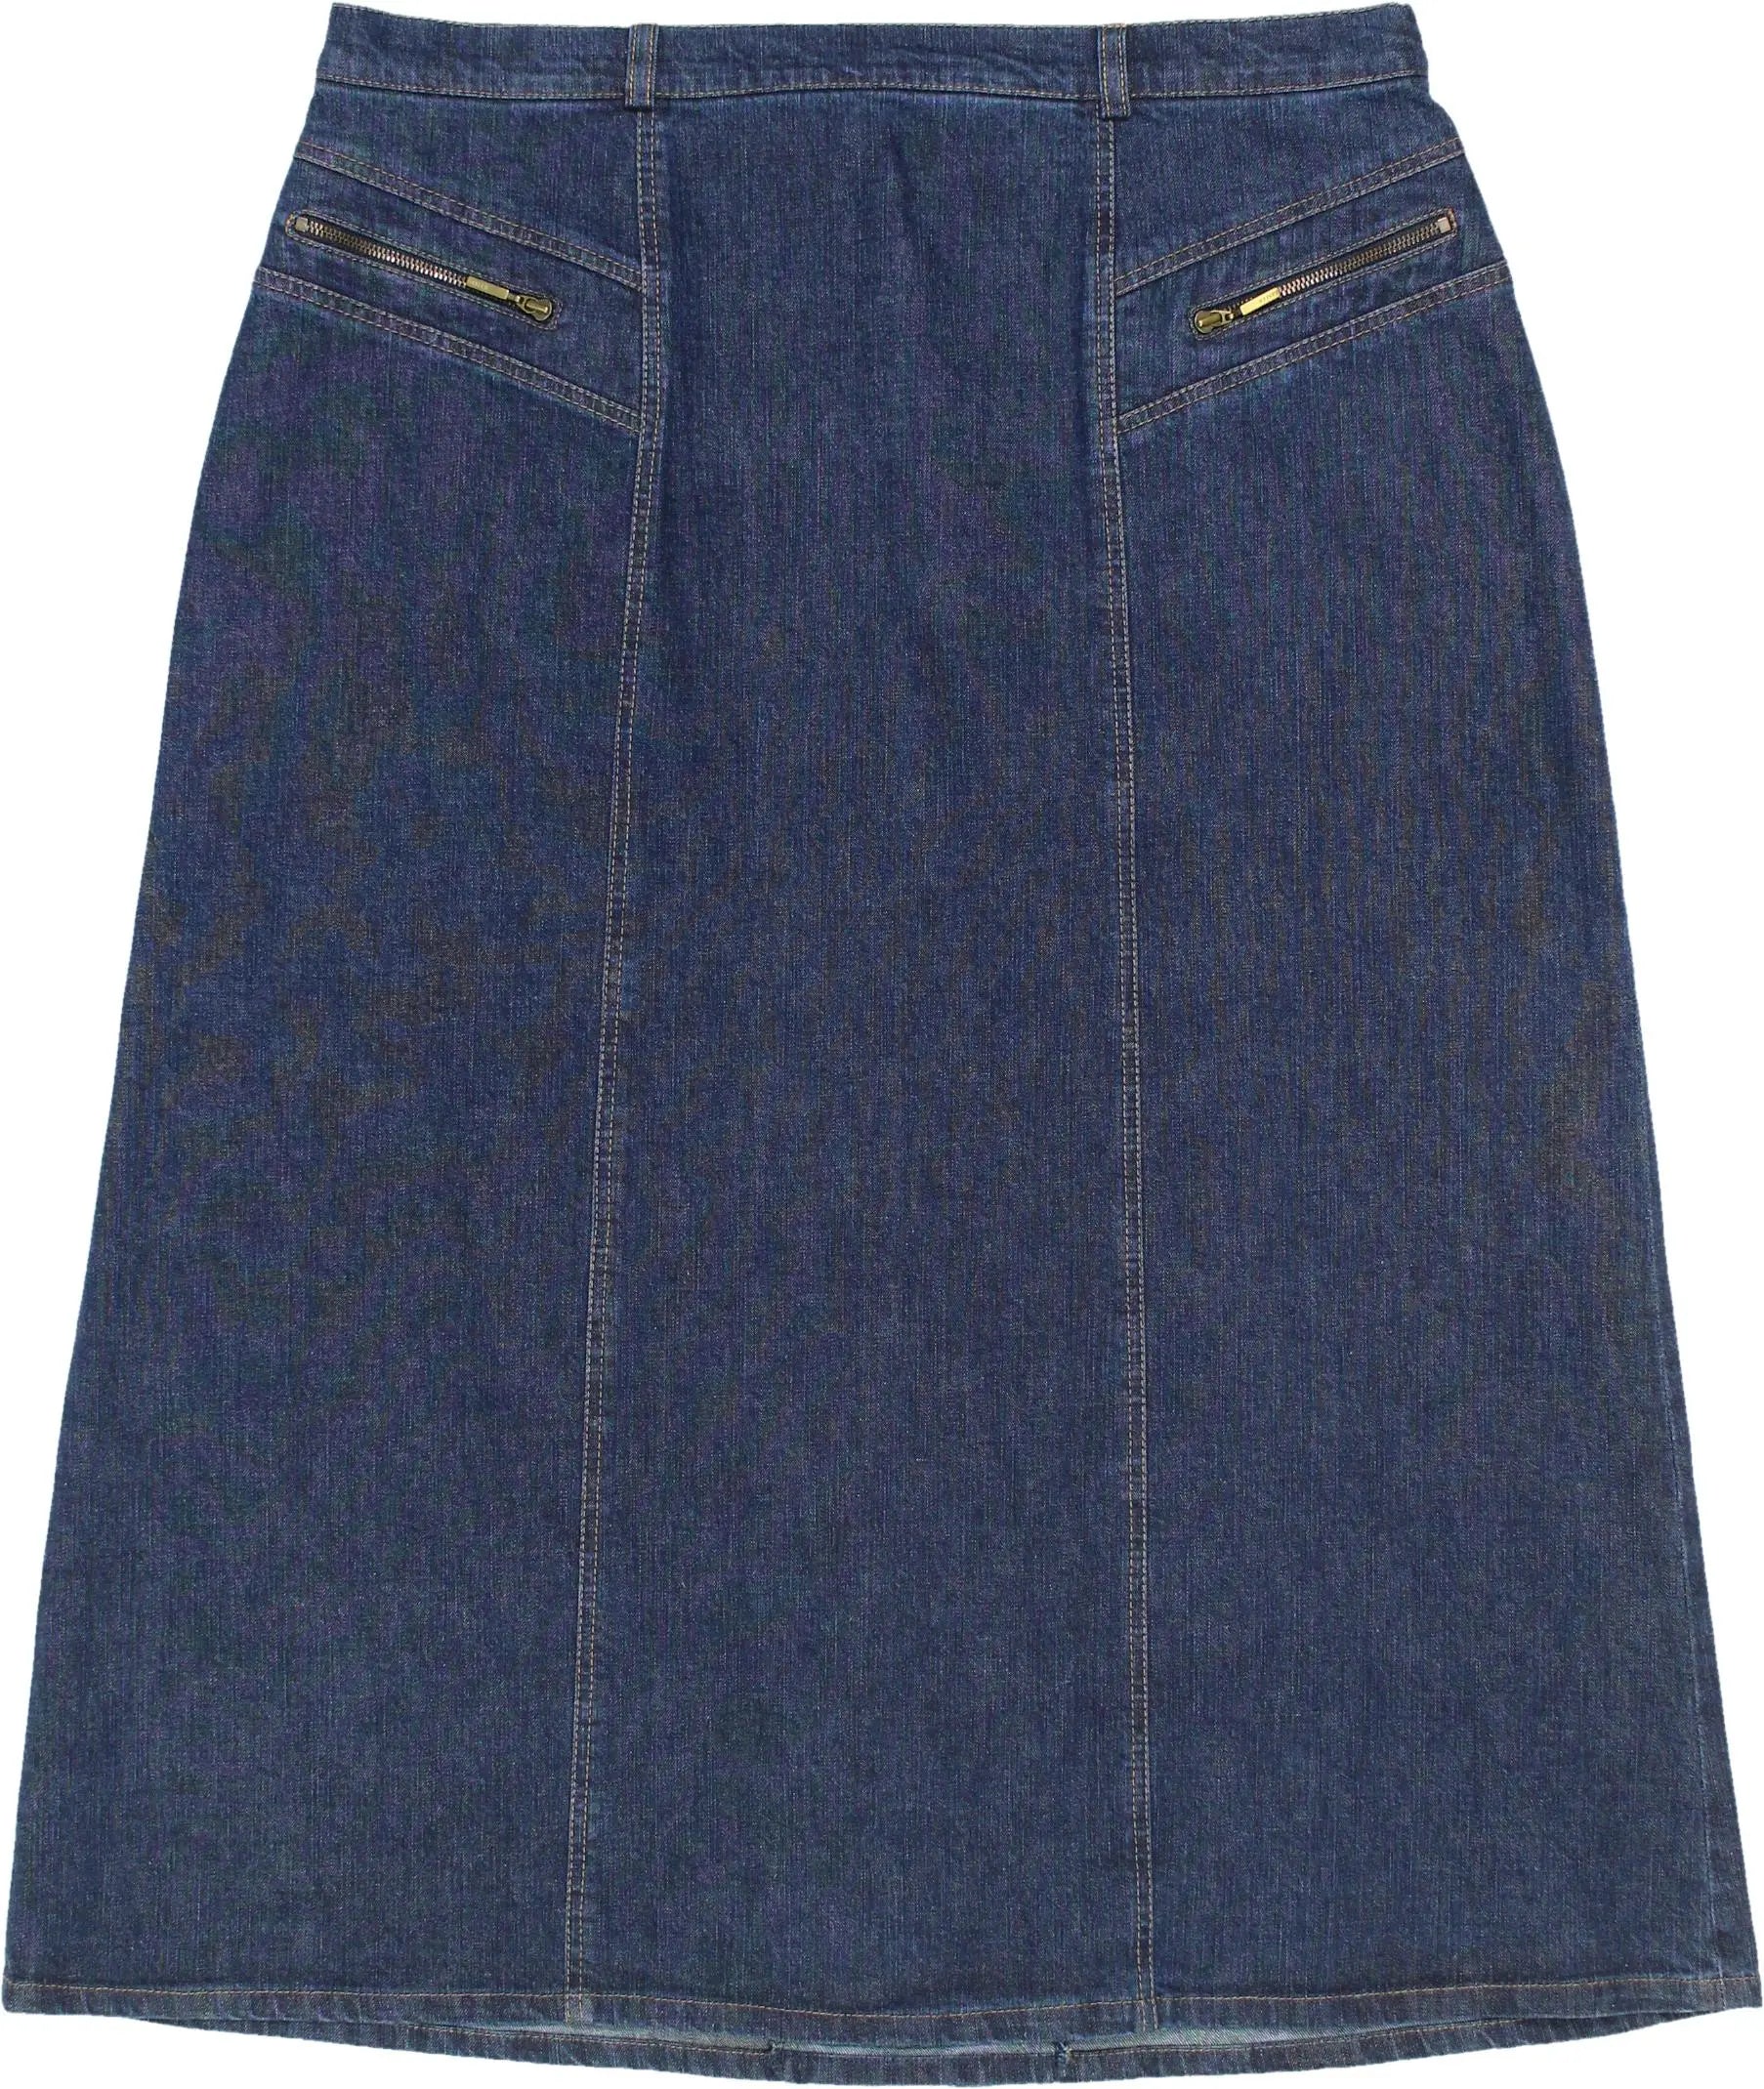 BASLER - 90s Denim Skirt- ThriftTale.com - Vintage and second handclothing